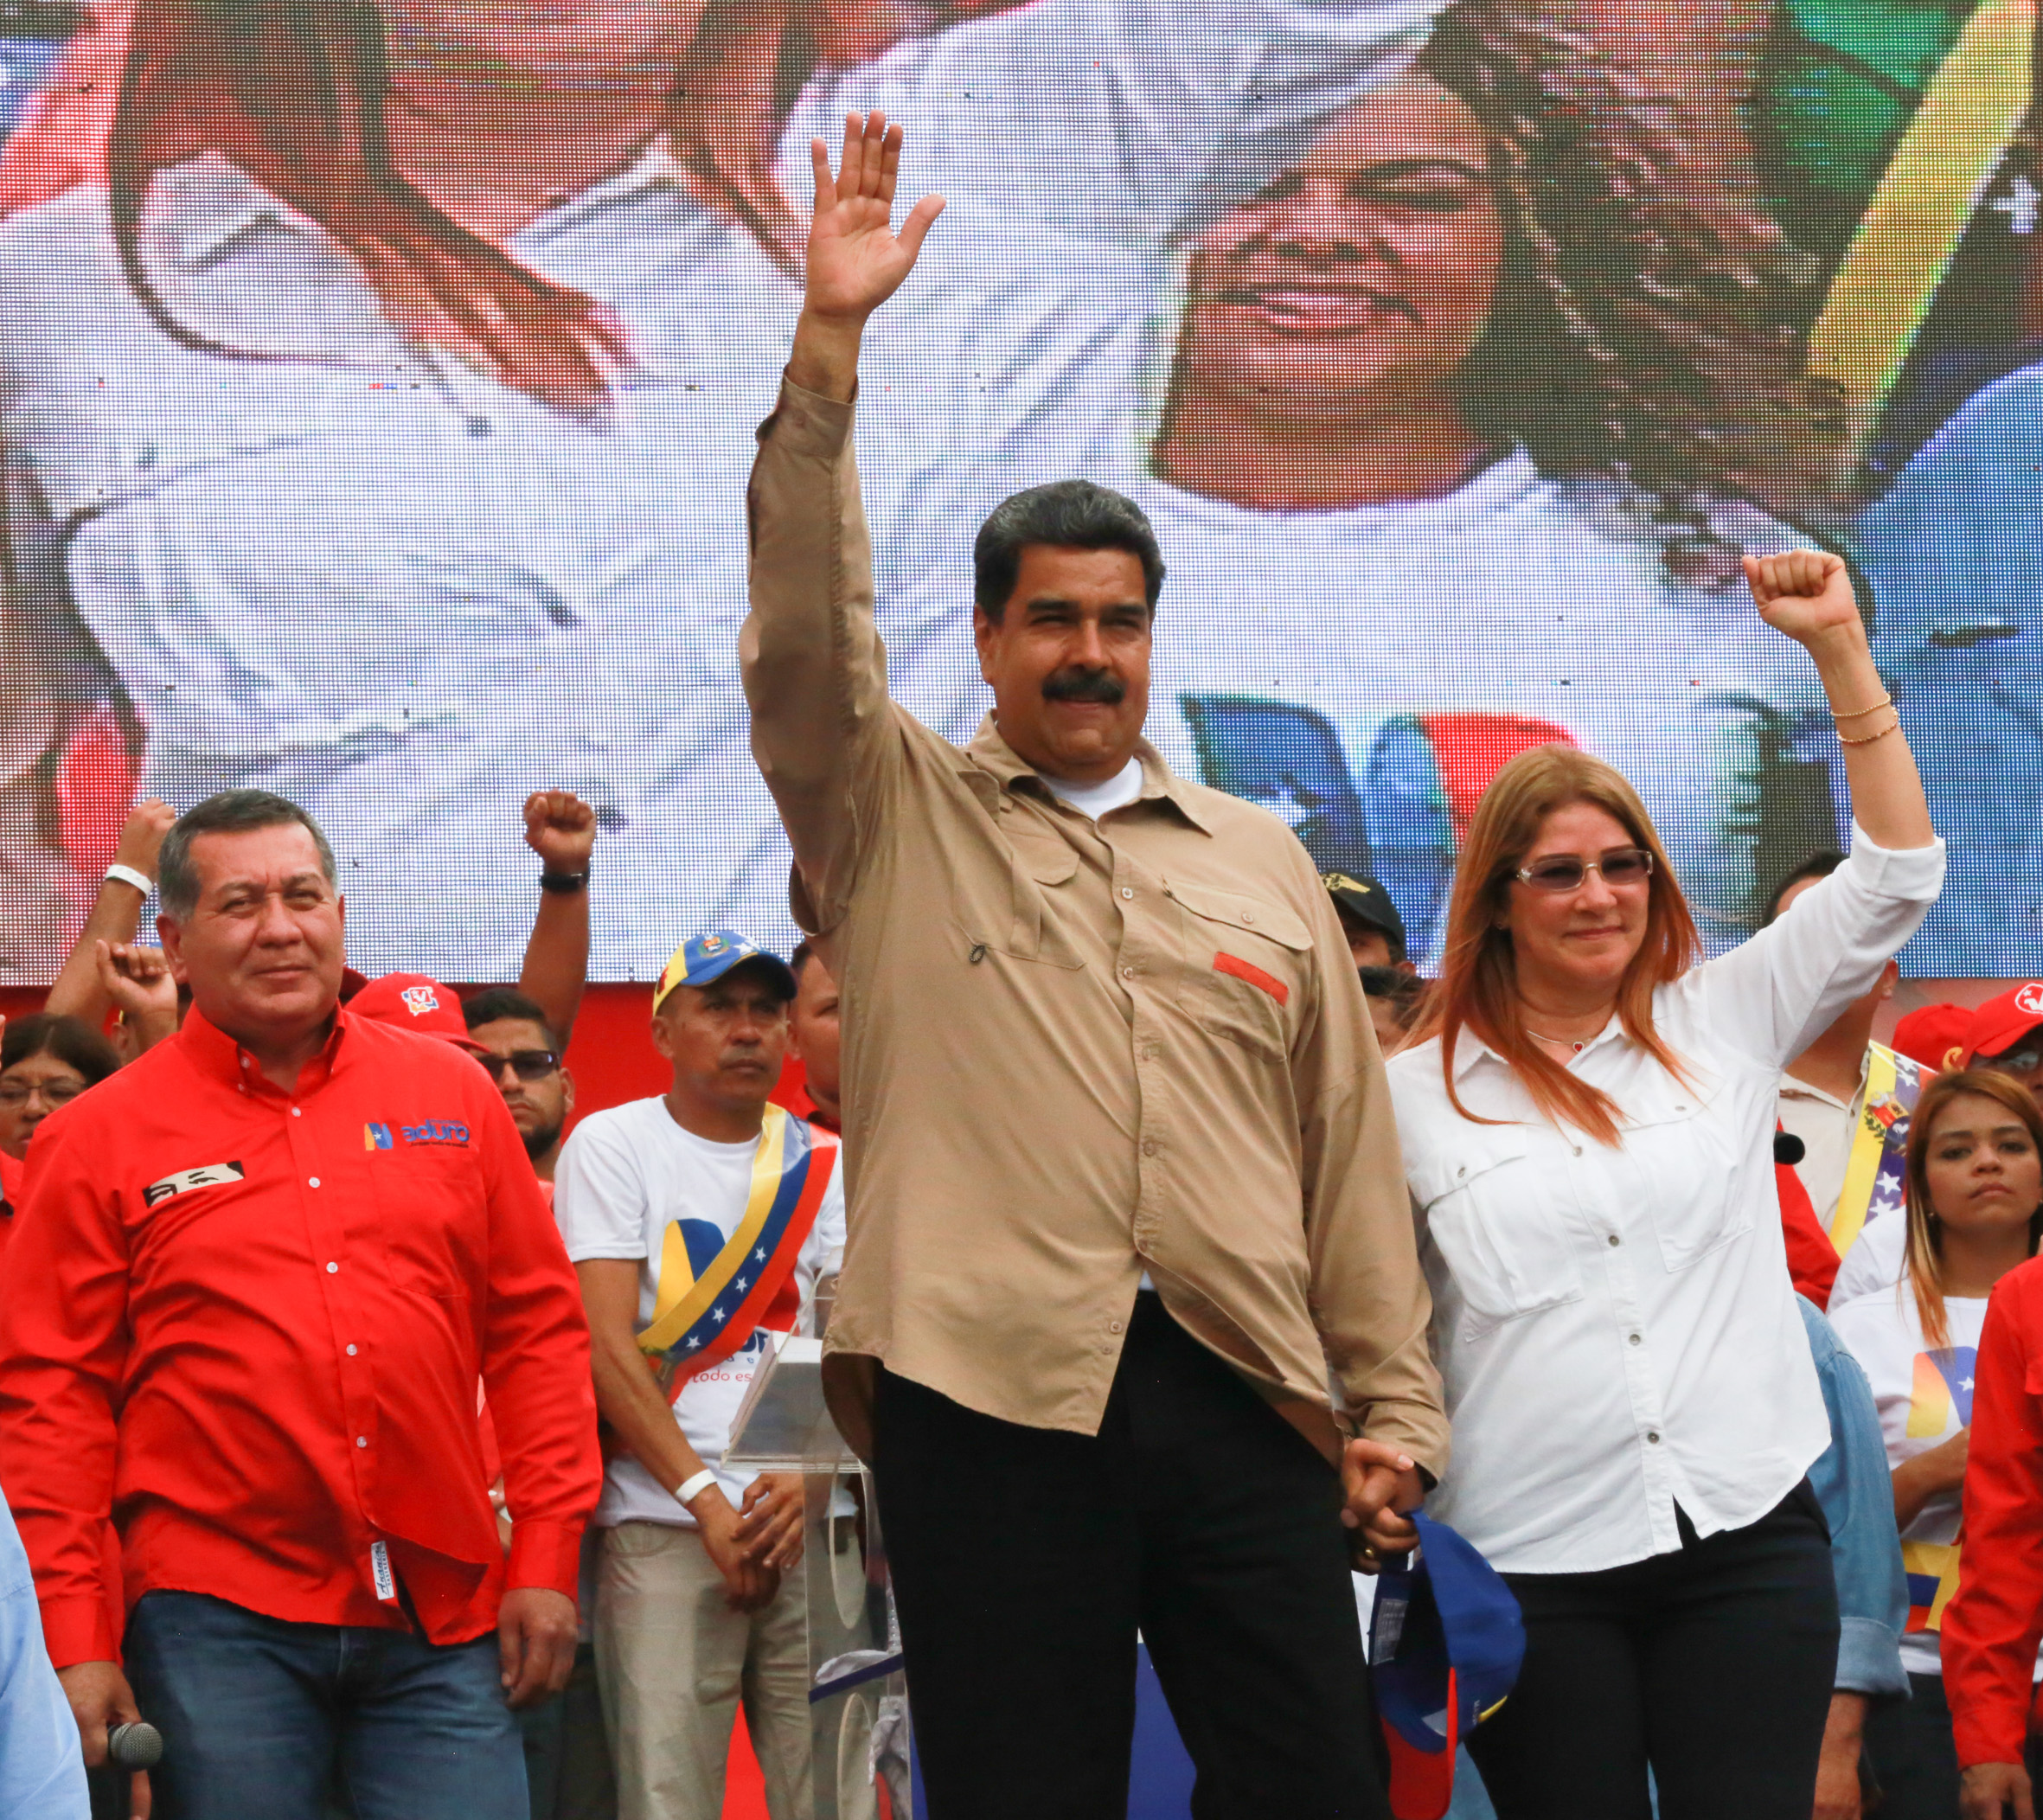 El candidato Nicolás Maduro se encuentra recorriendo Venezuela en el marco de la campaña electoral.